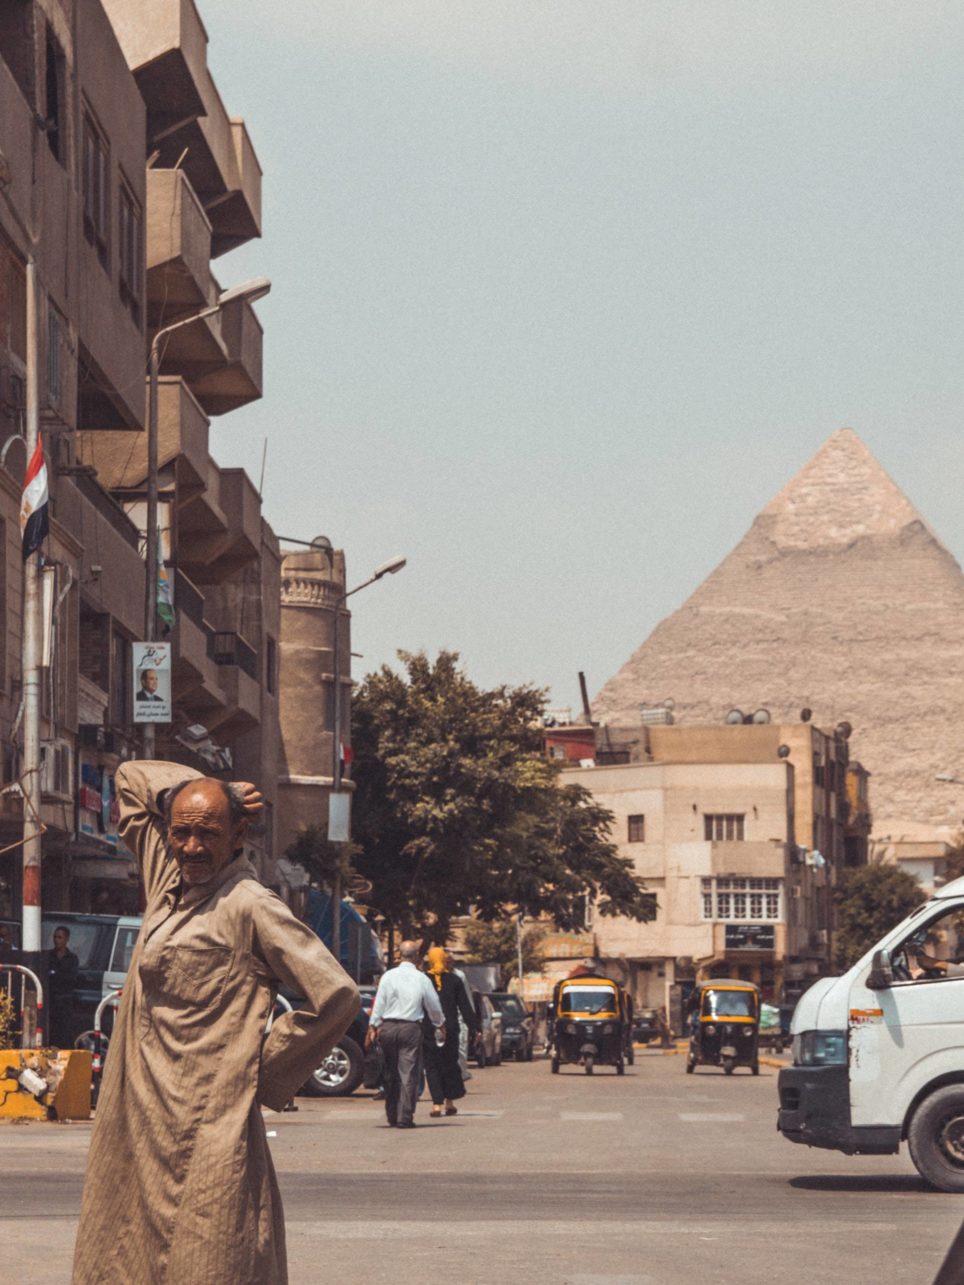 Die Stadt Gizeh, Ägypten